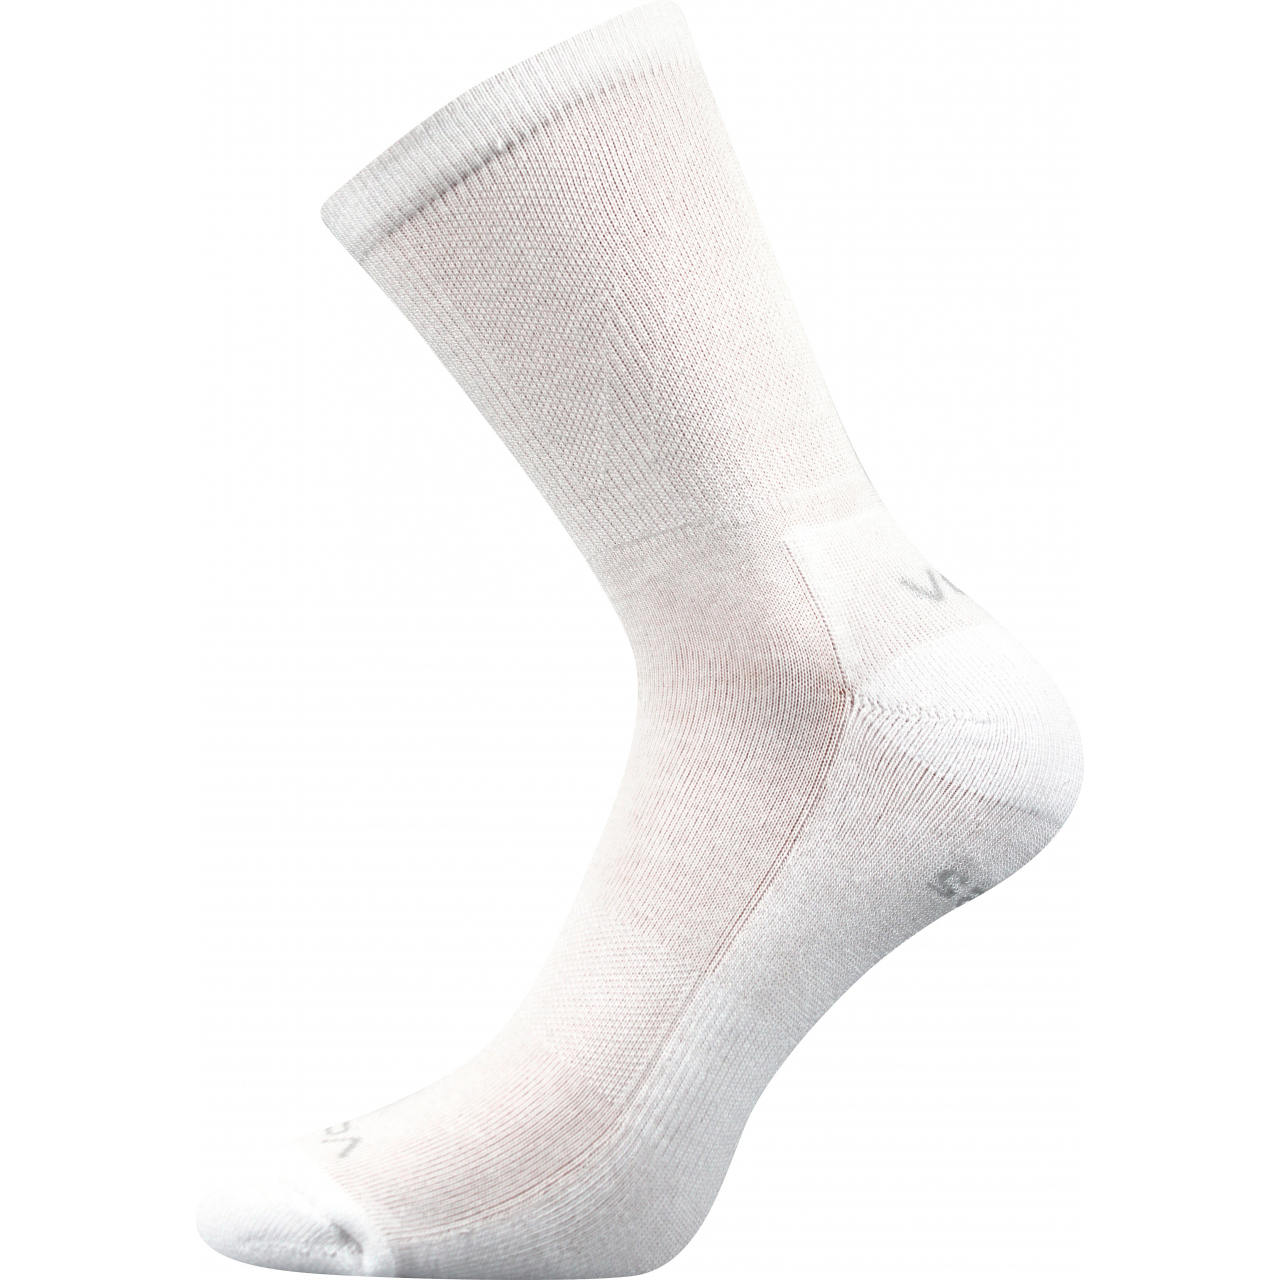 Ponožky sportovní Voxx Kinetic - bílé, 43-46